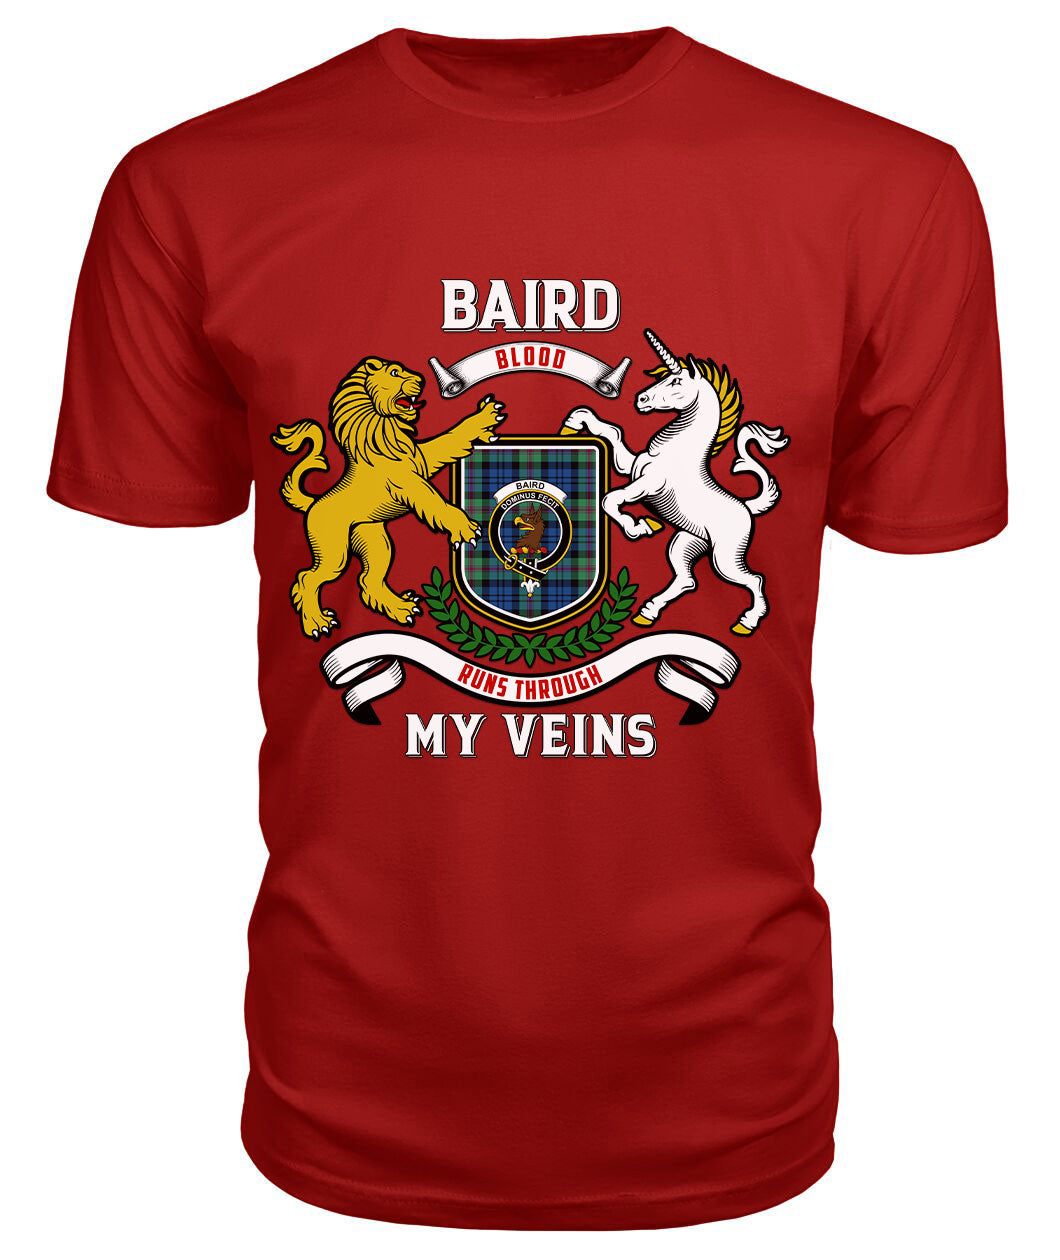 Baird Ancient Tartan Crest 2D T-shirt - Blood Runs Through My Veins Style